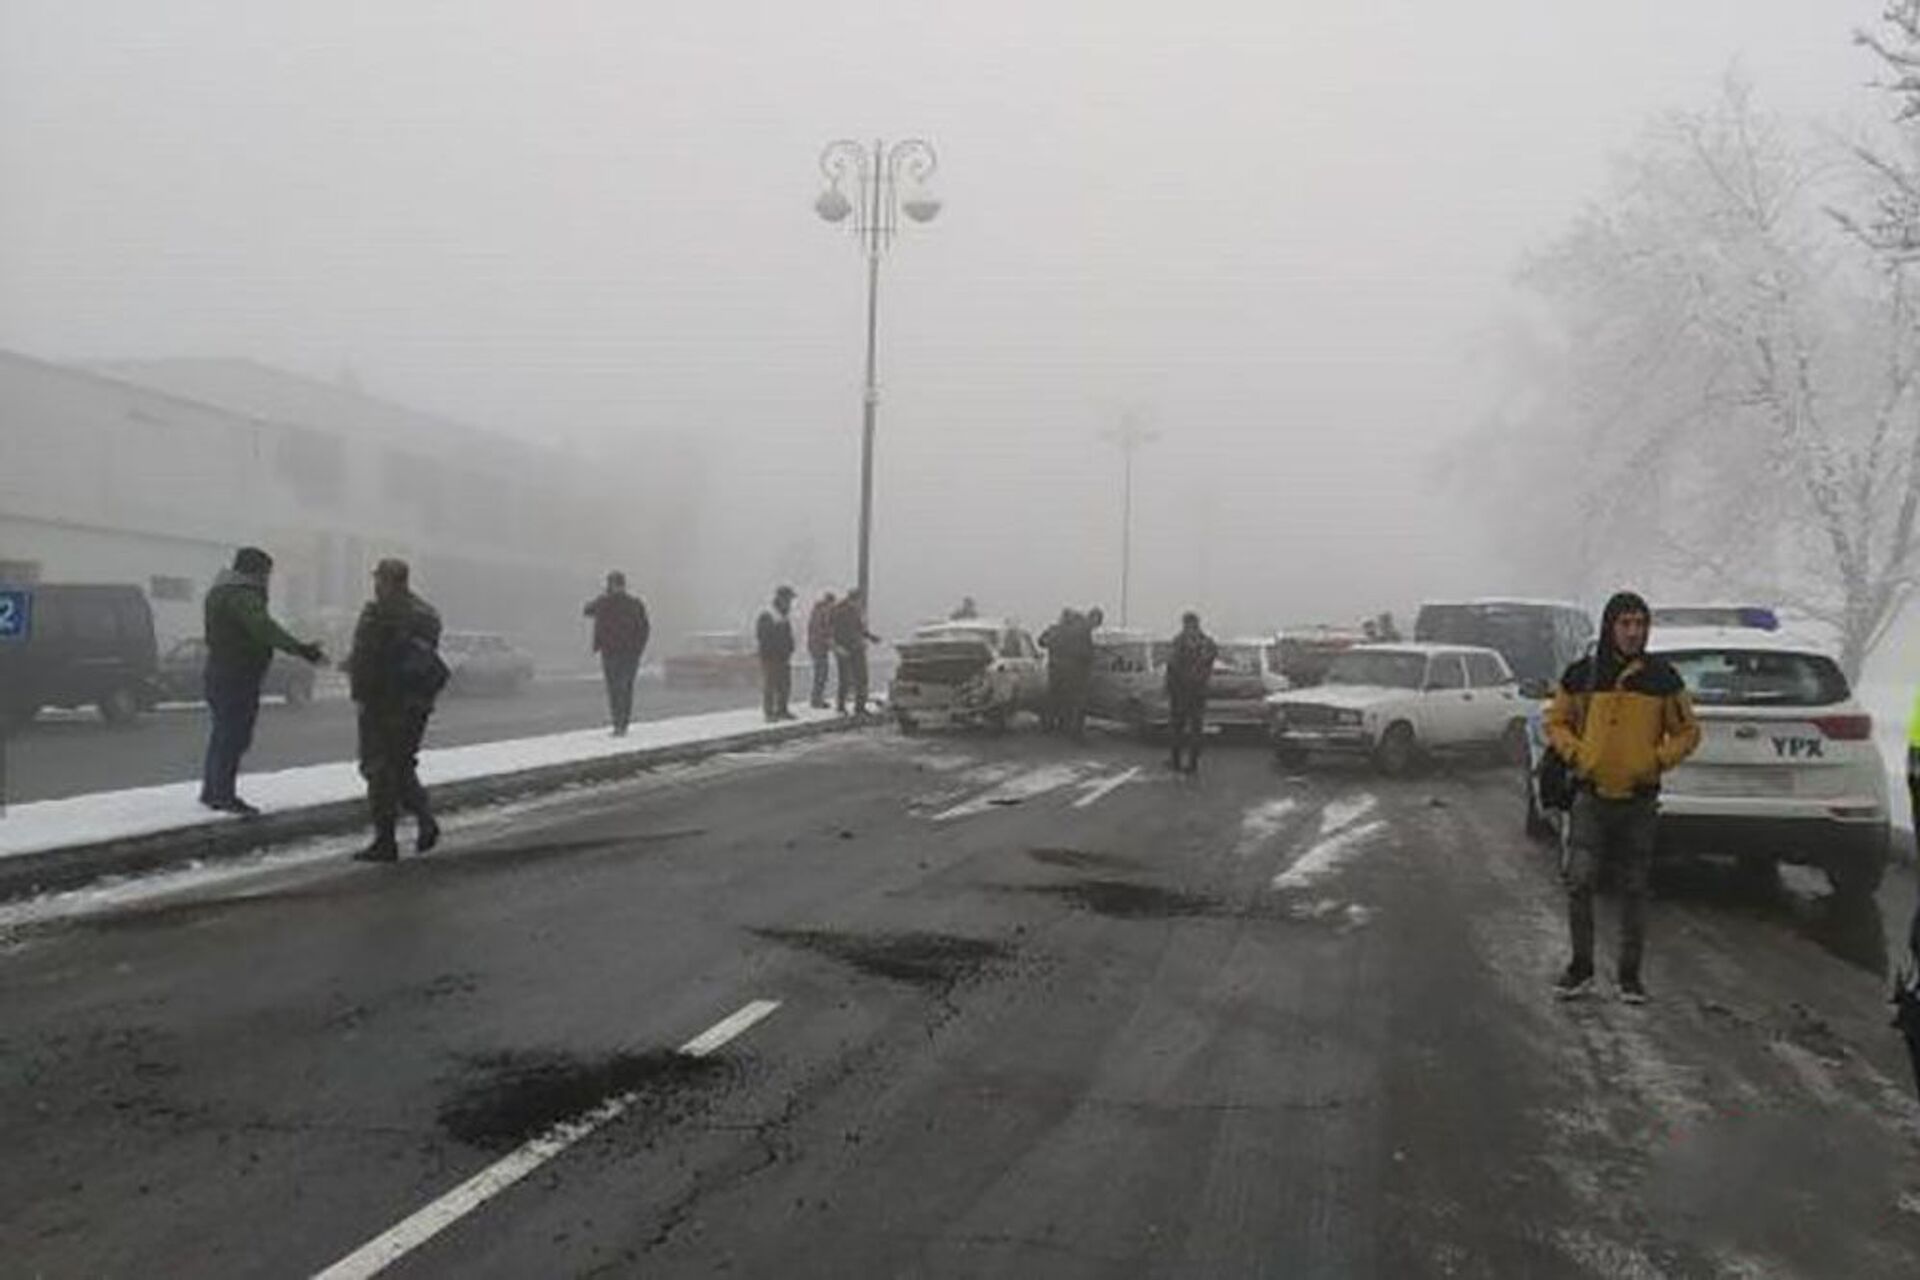 Гололед на дороге привел к цепной аварии в Габале - Sputnik Азербайджан, 1920, 19.02.2021